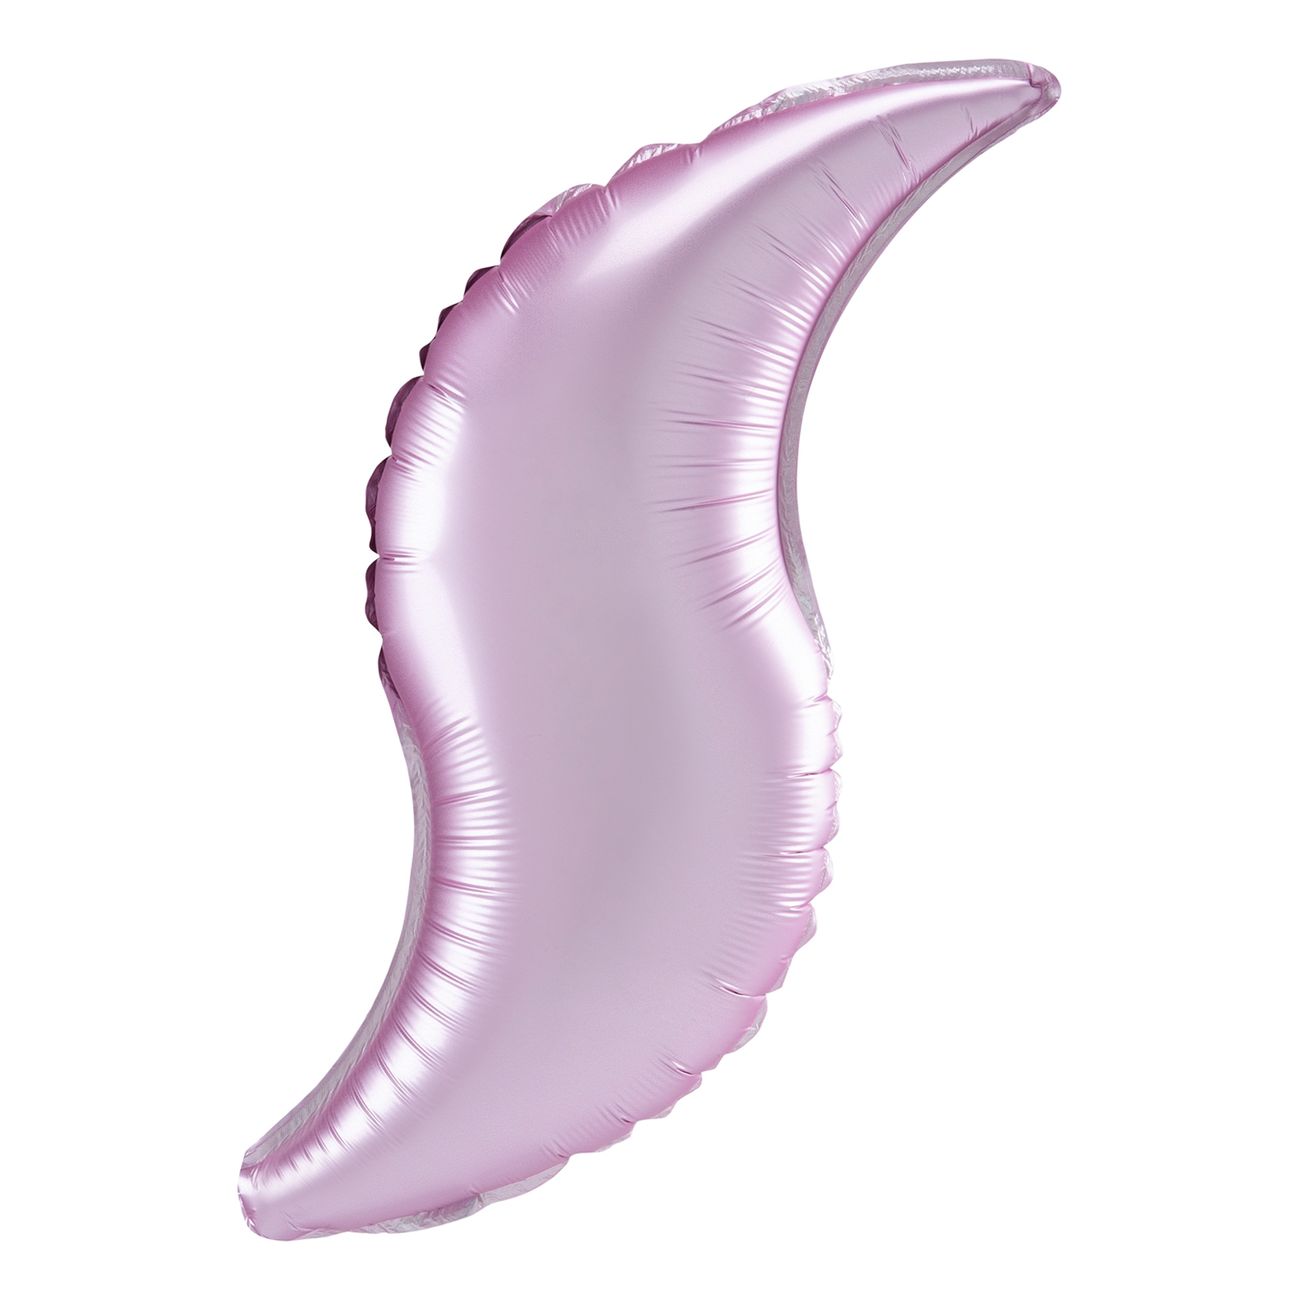 folieballong-kurvad-satin-rosa-pastell-99056-1